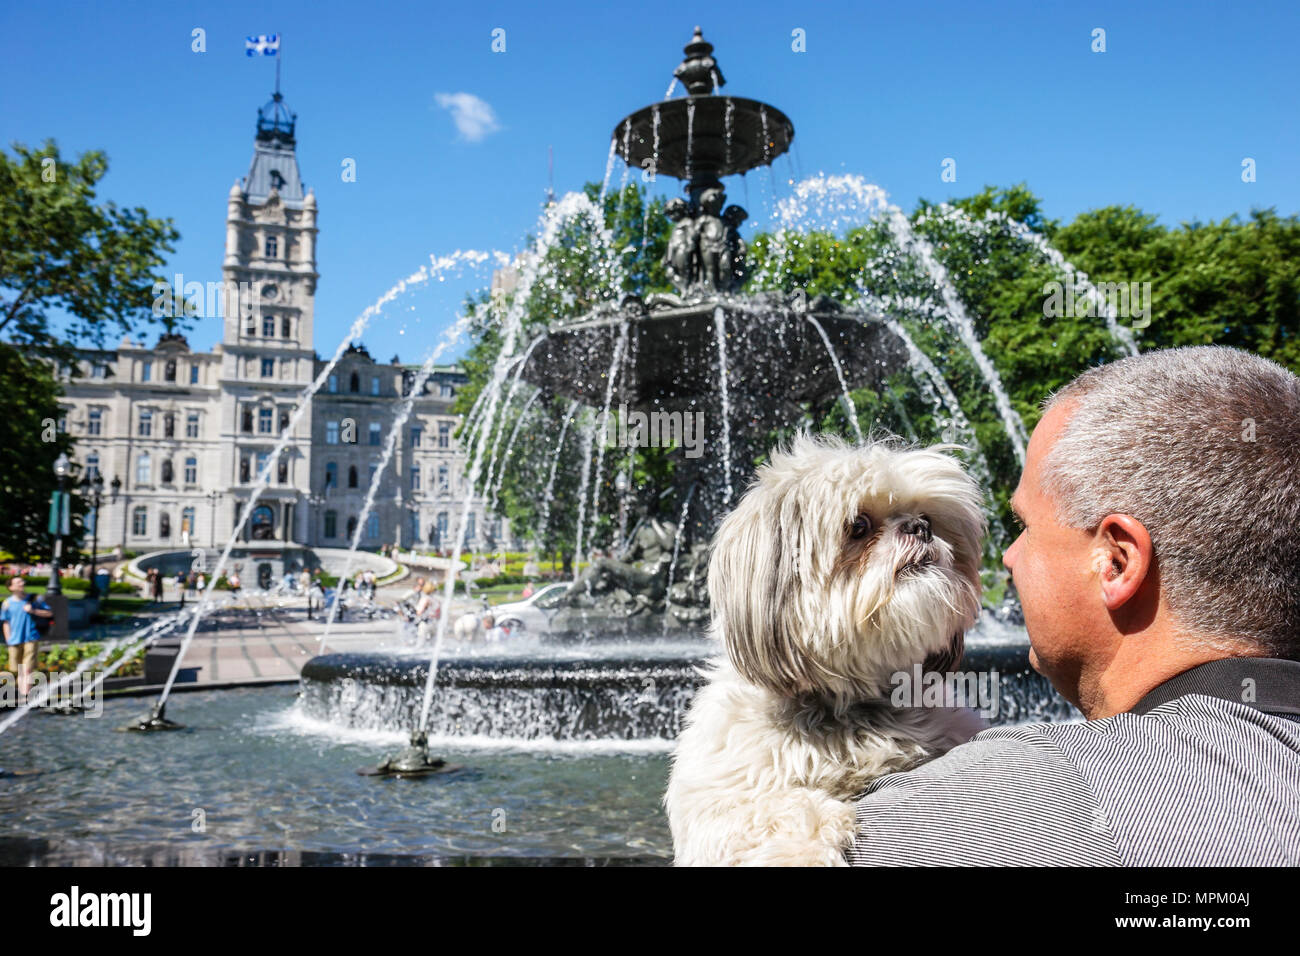 Quebec Canada, Avenue Honore Mercier, fontana pubblica, edificio del Parlamento, Hotel de Parlement, cane, animale domestico, canino, animale, acqua, Canada070712031 Foto Stock